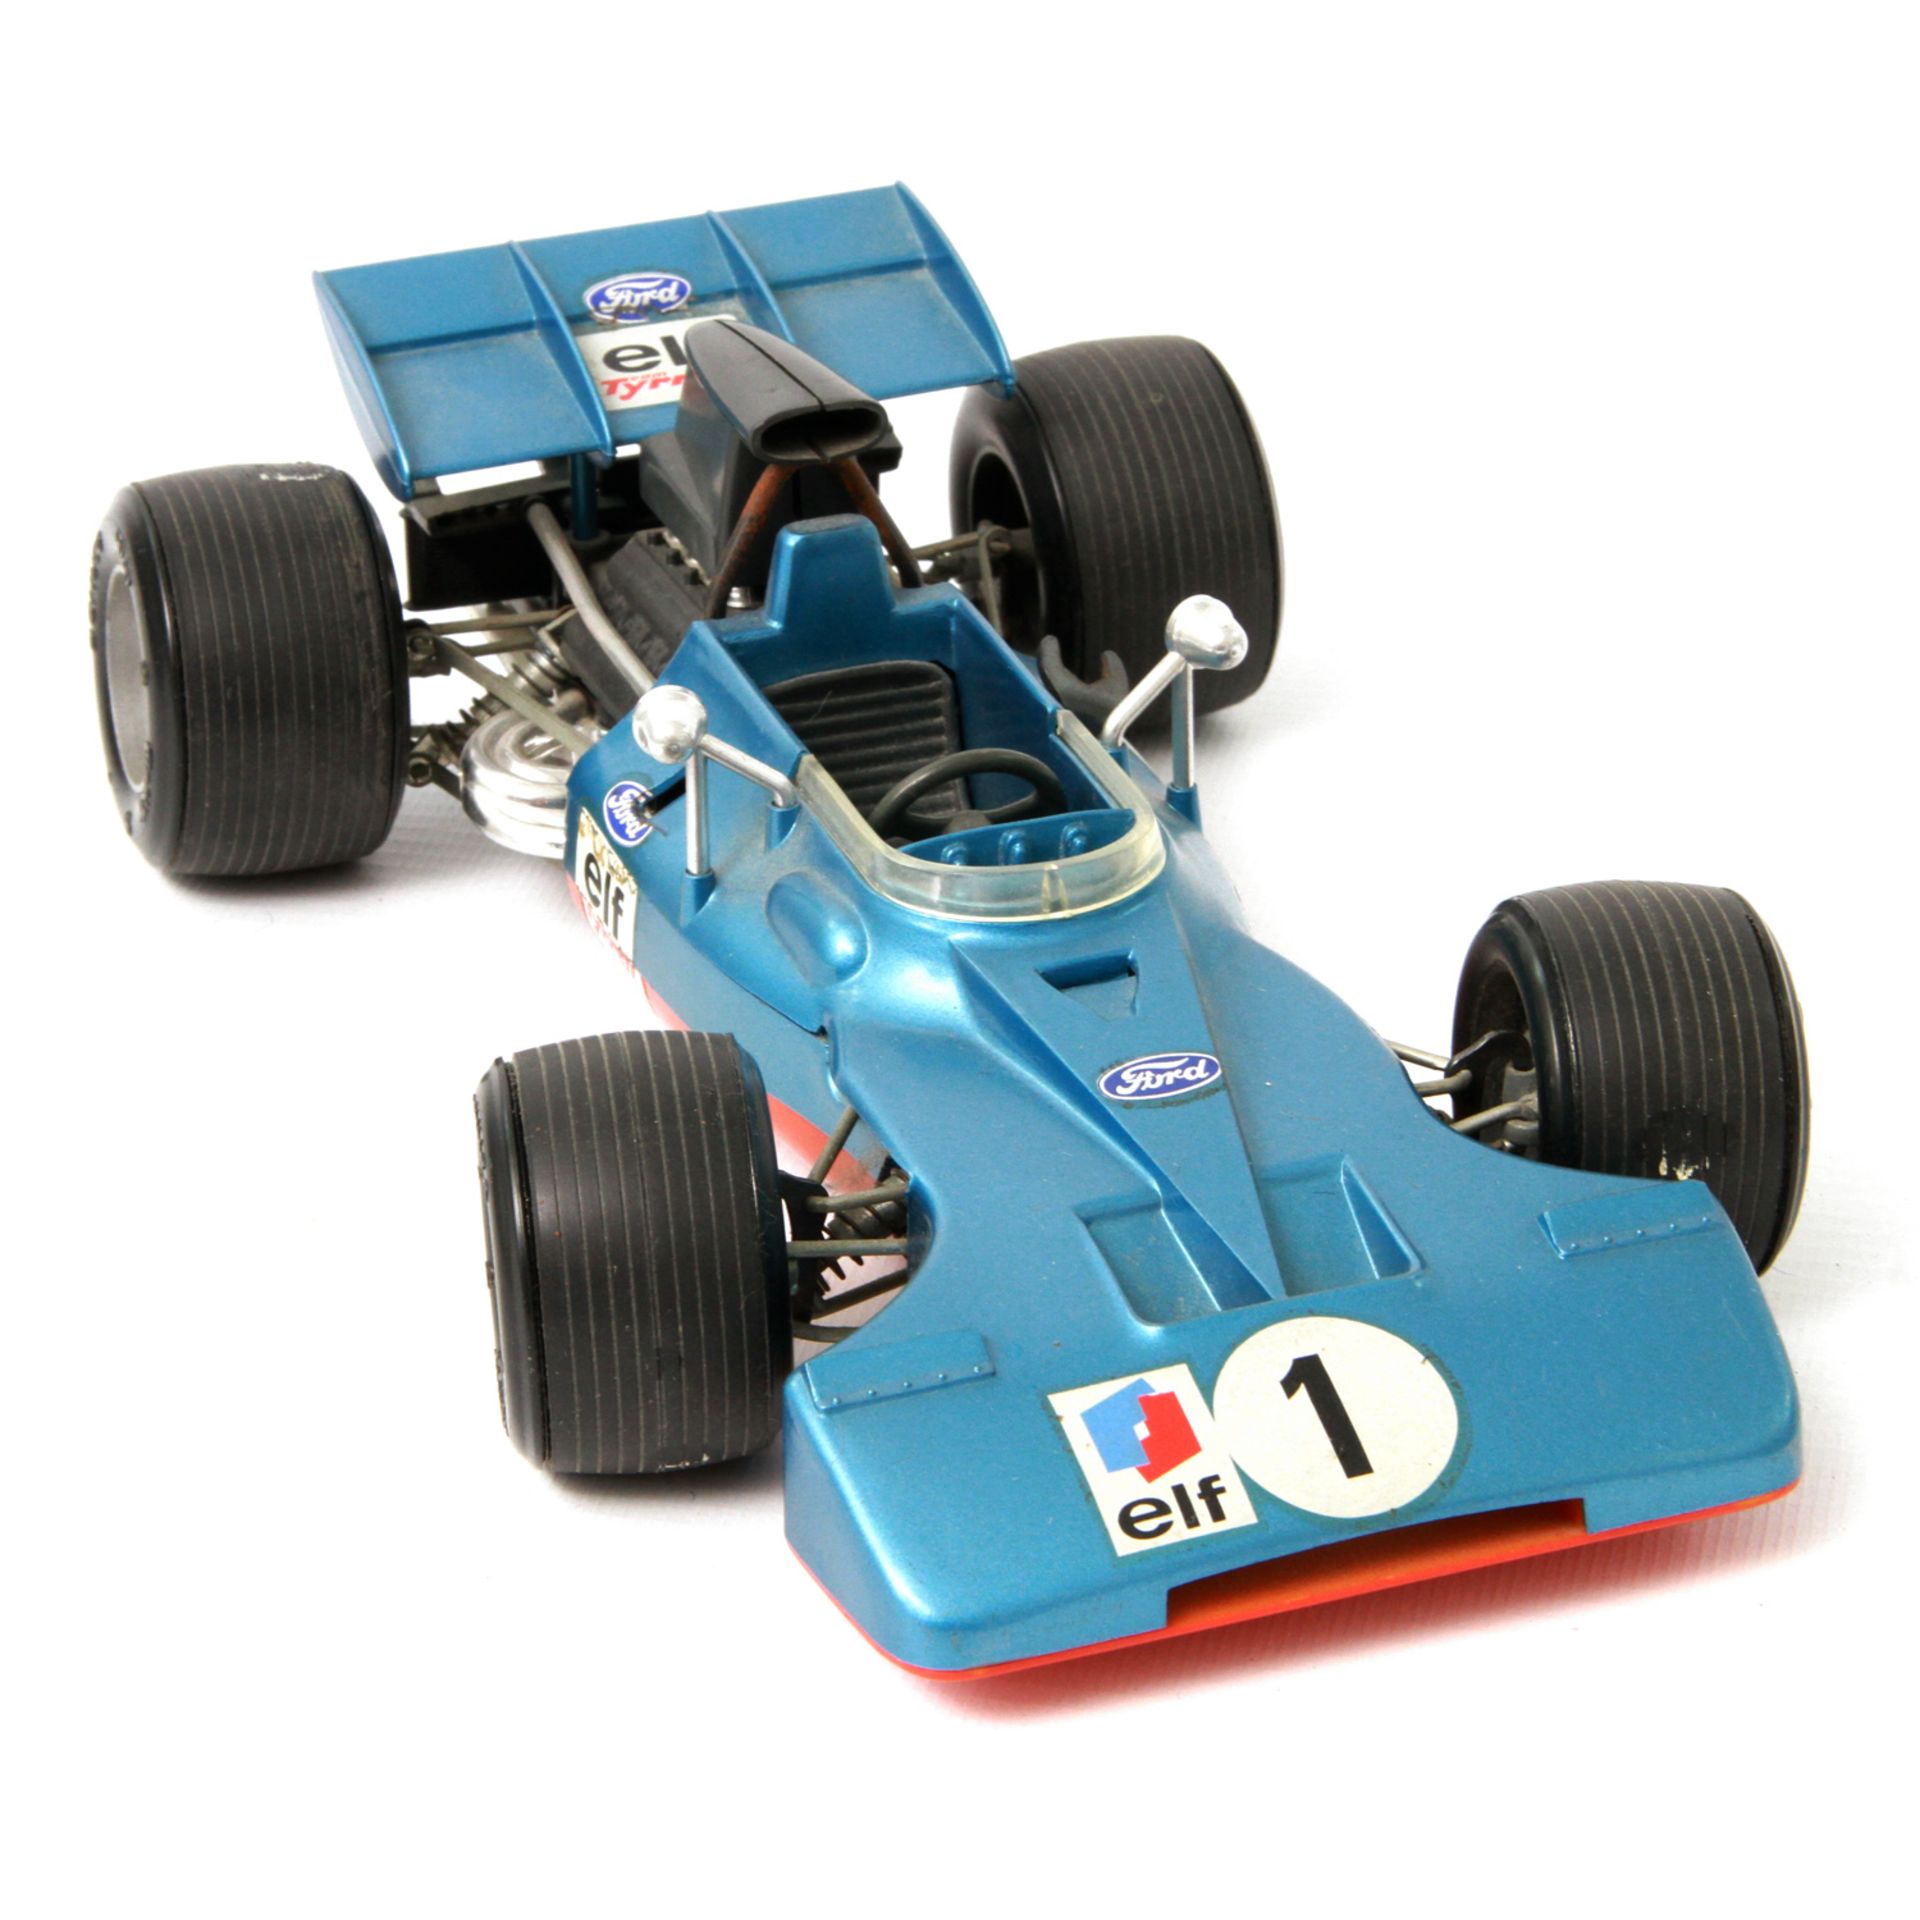 SCHUCO Formel 1-Rennwagen Tyrrell-Ford 356 176, auf Unterseite gemarkt, blaues Kunststoffgehäuse,